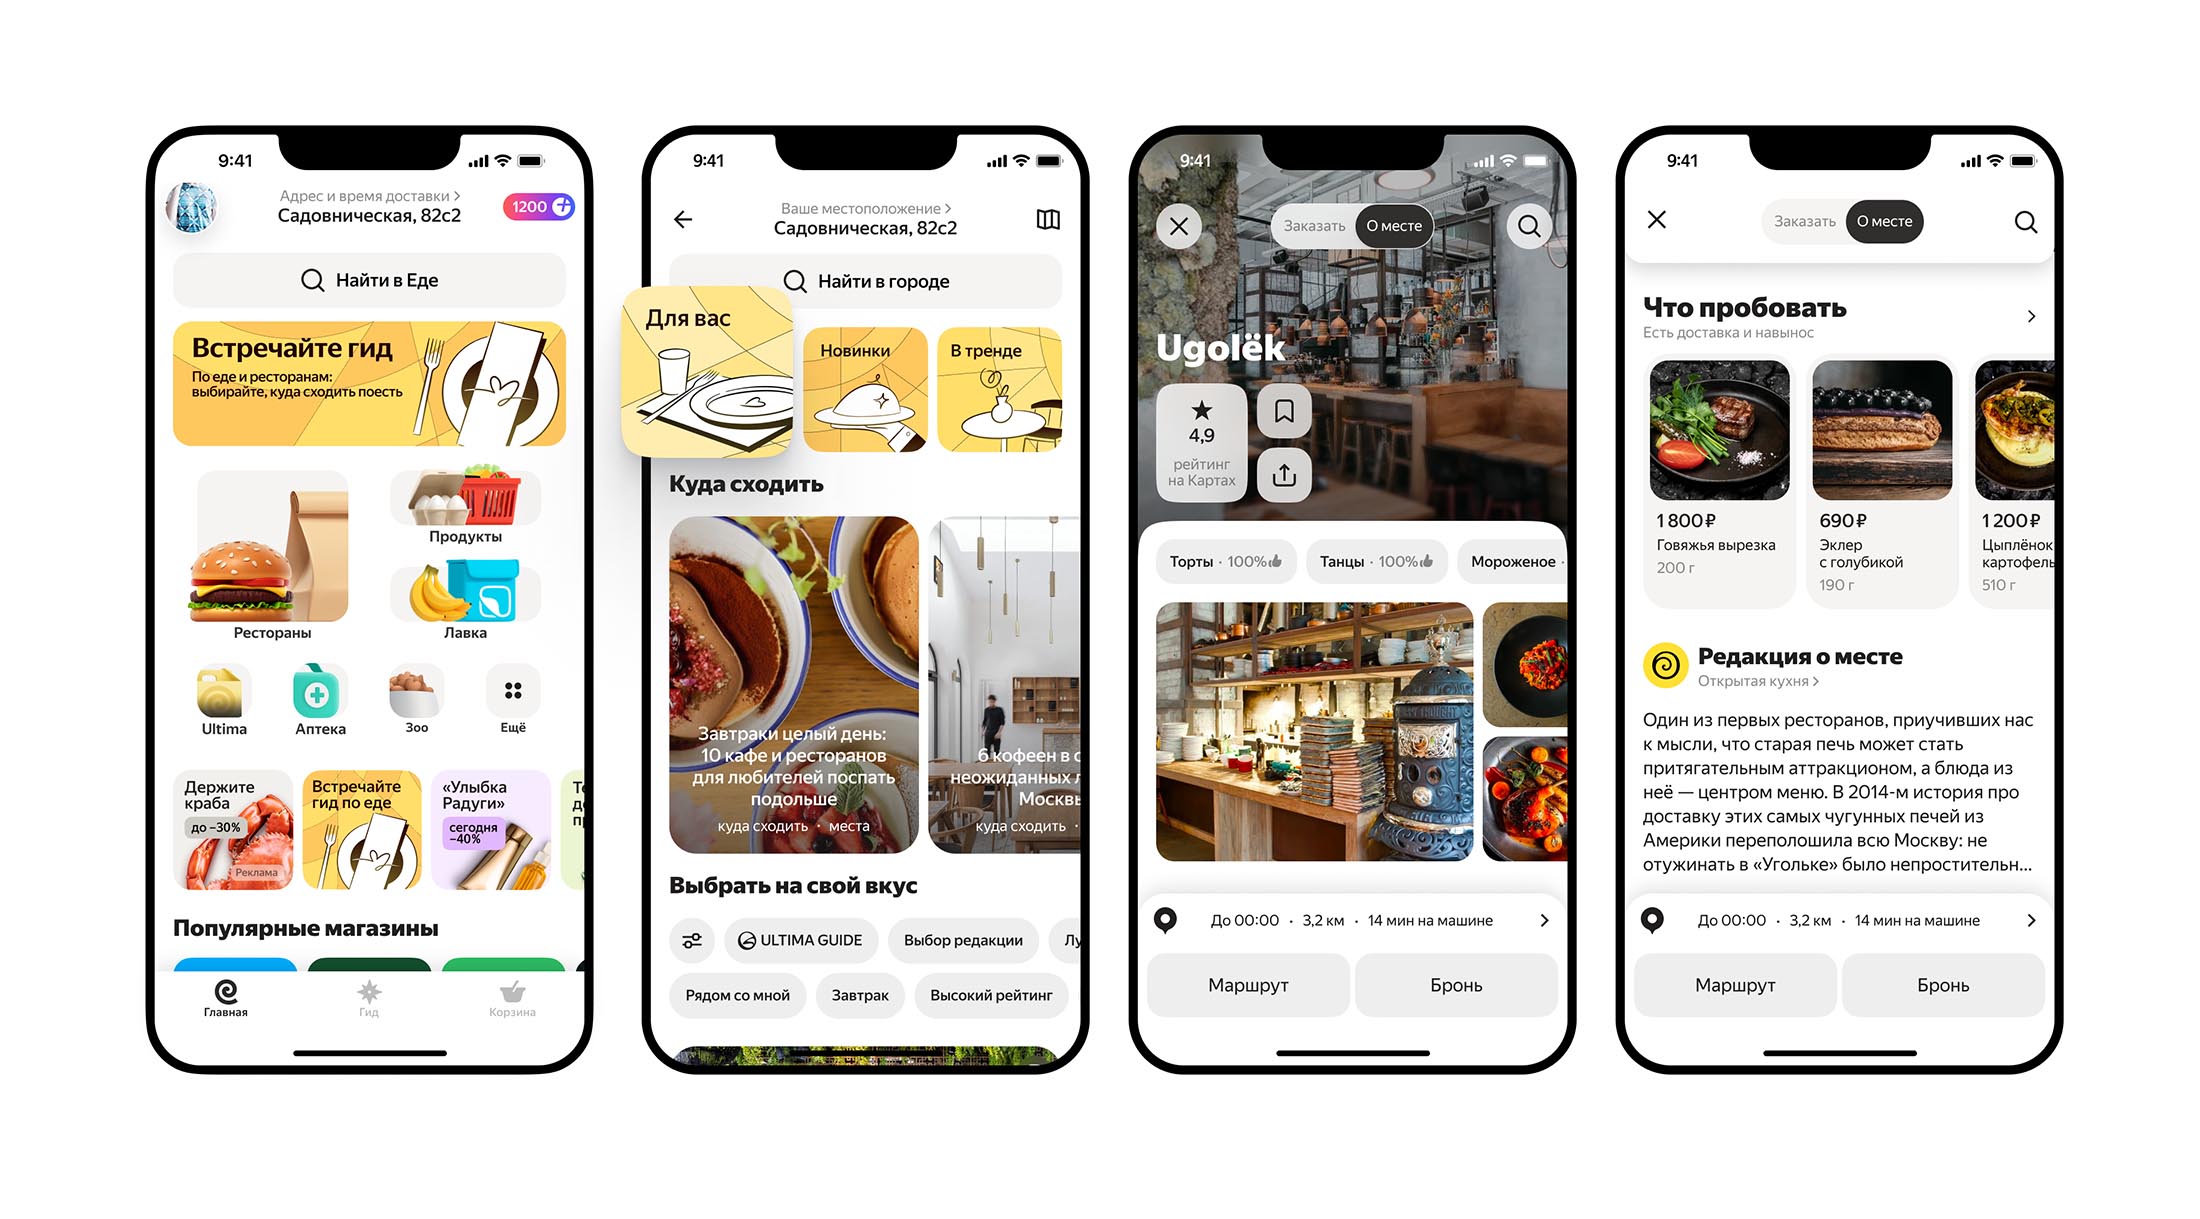 Яндекс Еда идёт в офлайн: новый путеводитель внутри сервиса подскажет, где и что поесть в городе